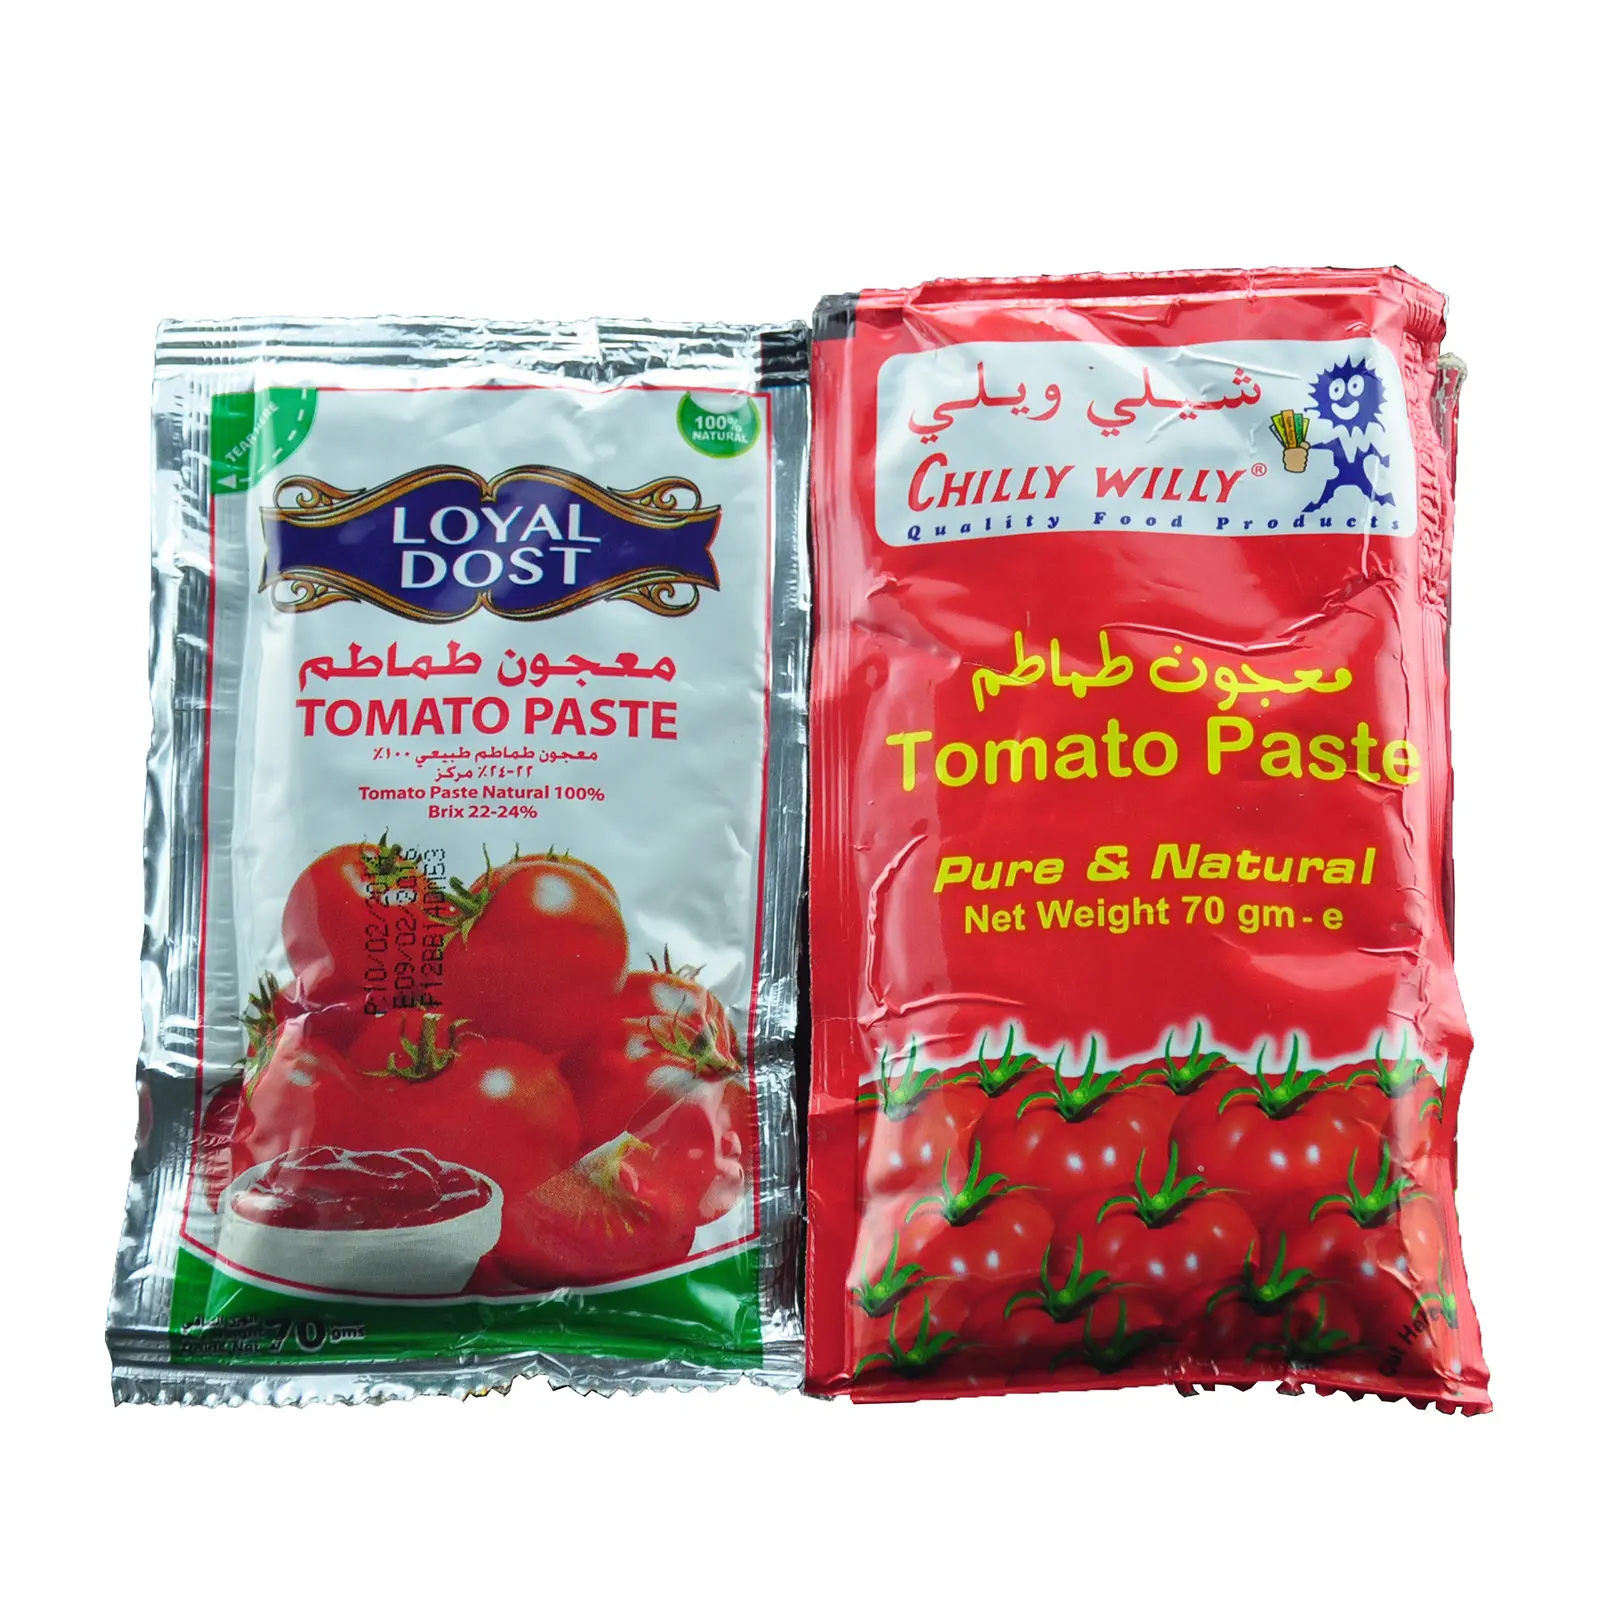 ハラールアフリカのイスラム教徒の料理人のための70g2200gの28-30% 濃縮トマトペースト低コストの新鮮な最高品質のハラール缶詰トマト食品